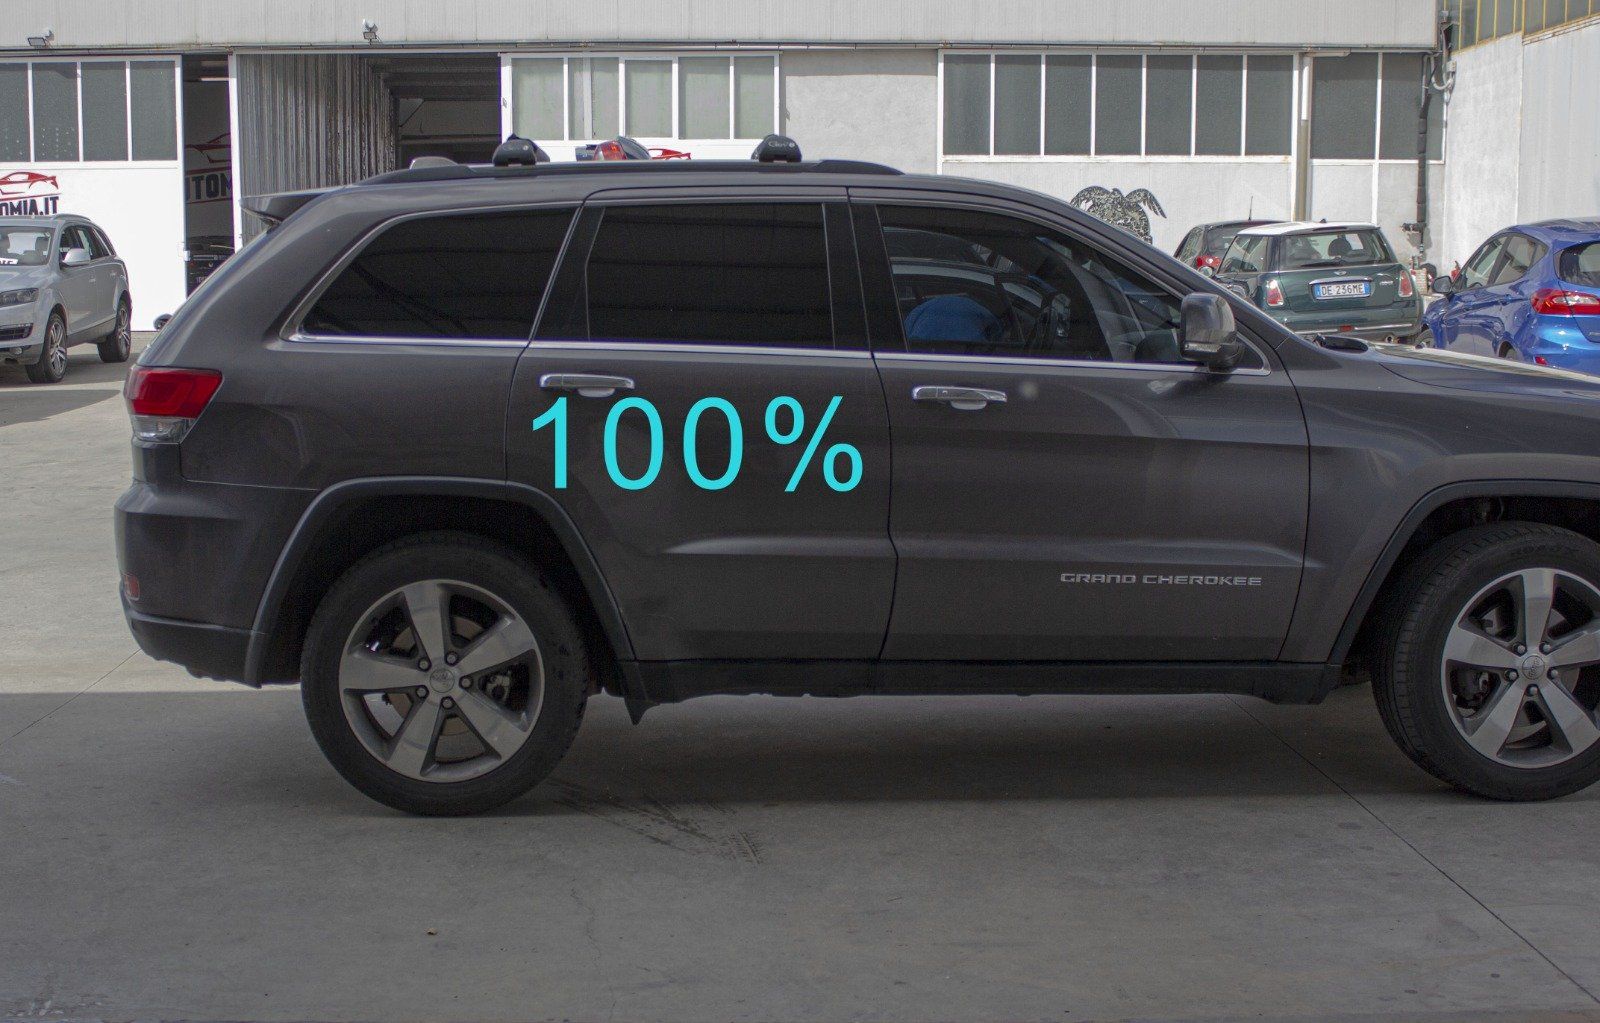 Gradazione  tonalità oscuramento vetri auto con pellicole oscuranti al 100% scuro  Jeep Grand Cherokee